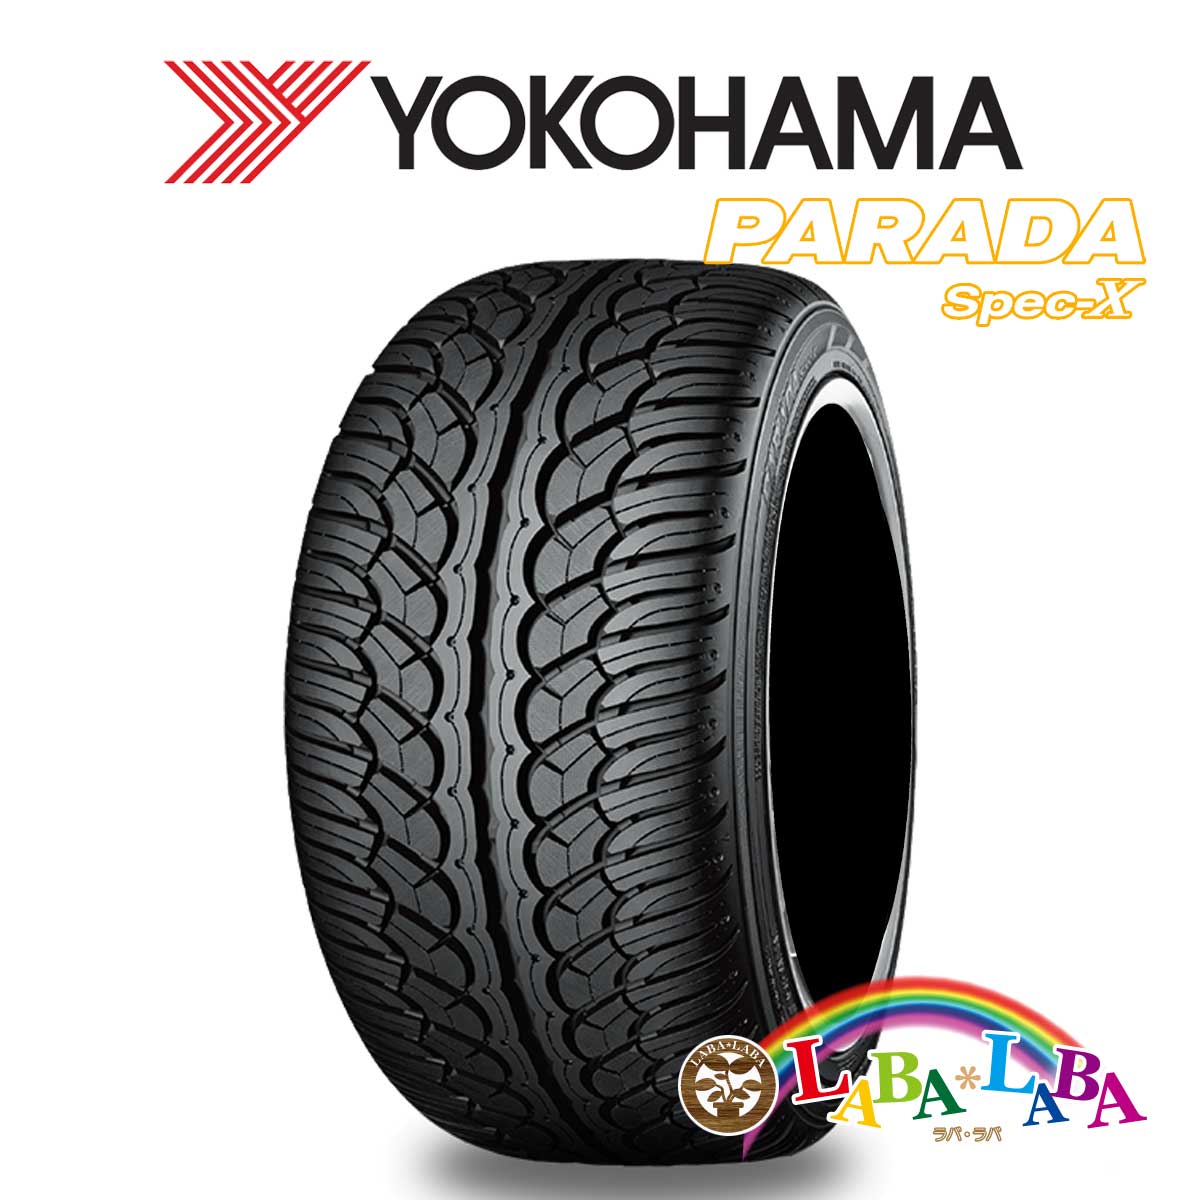 ２本以上送料無料 激安直営店 国産タイヤ サマータイヤ 新品 タイヤのみ YOKOHAMA ヨコハマ 安心発送 Spec-X PARADA XL 40R22 110V 285 PA02